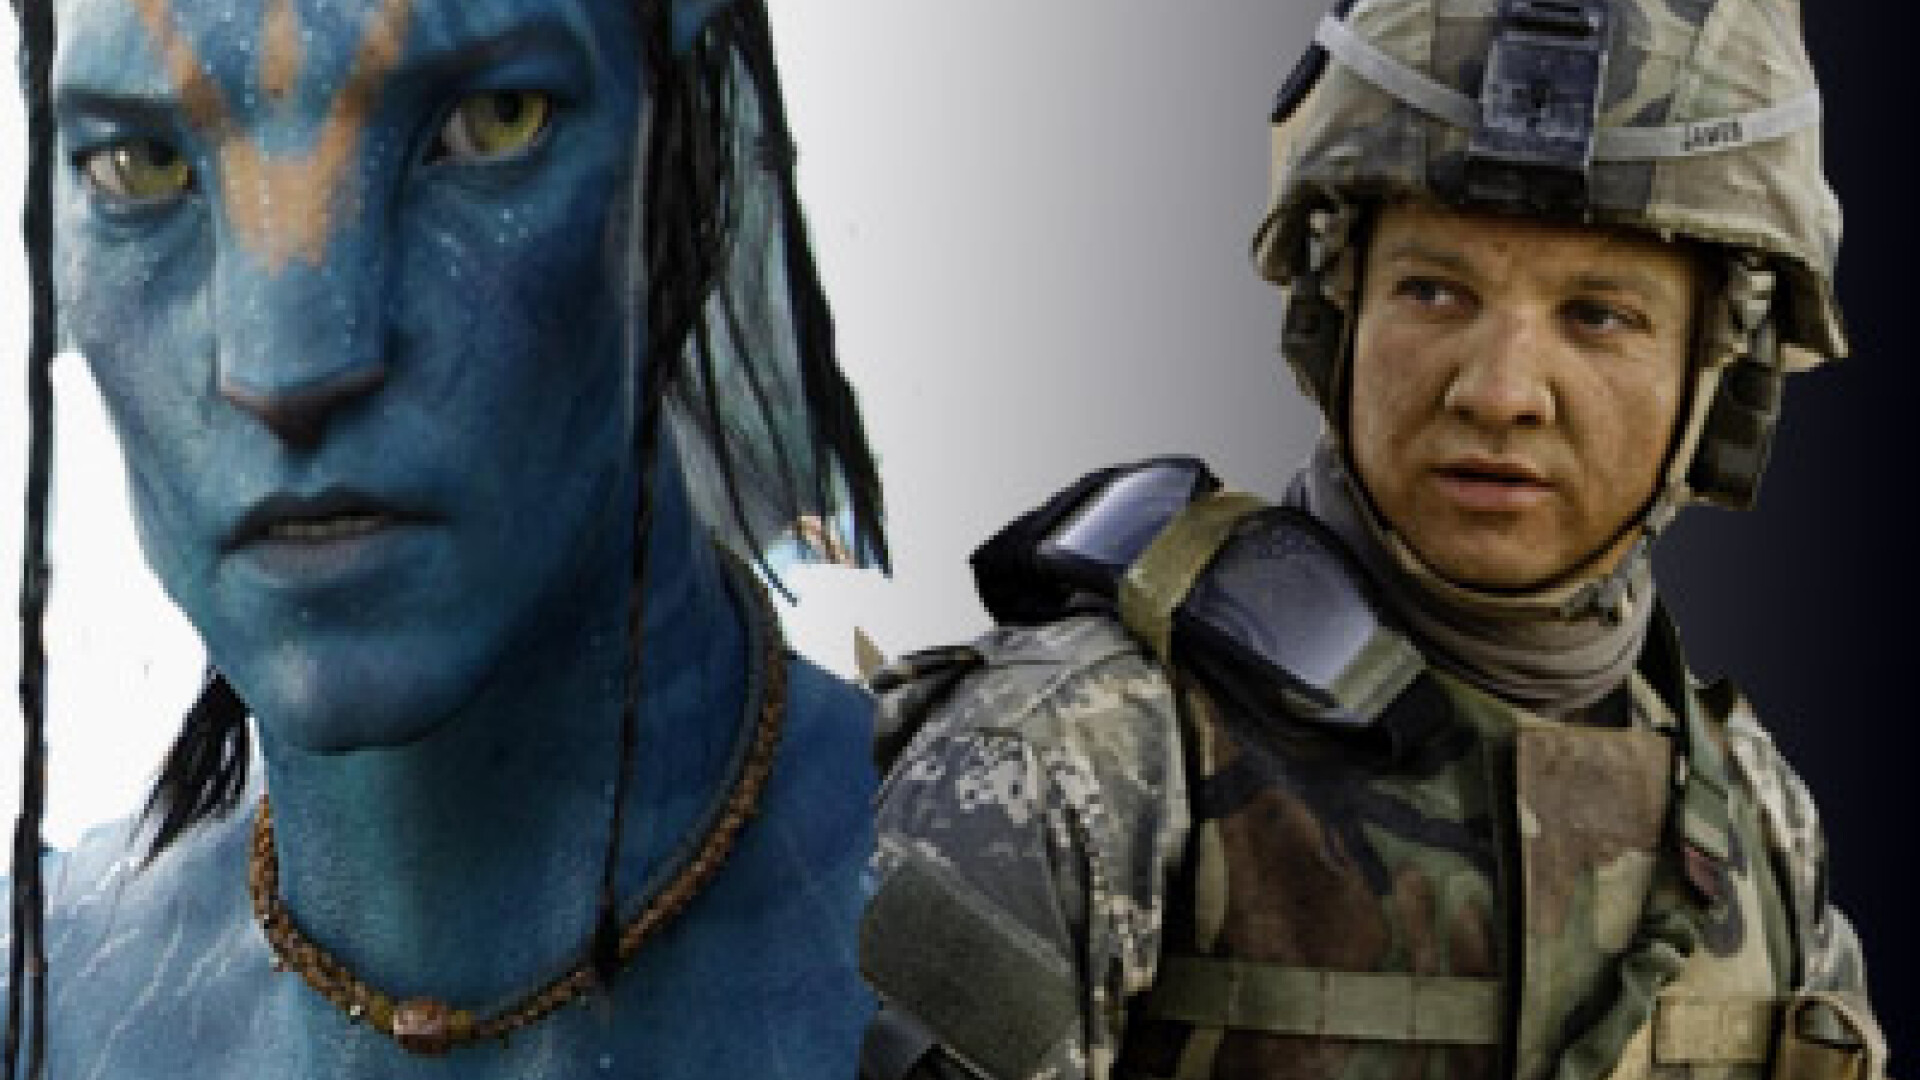 Avatar vs. Hurt Locker